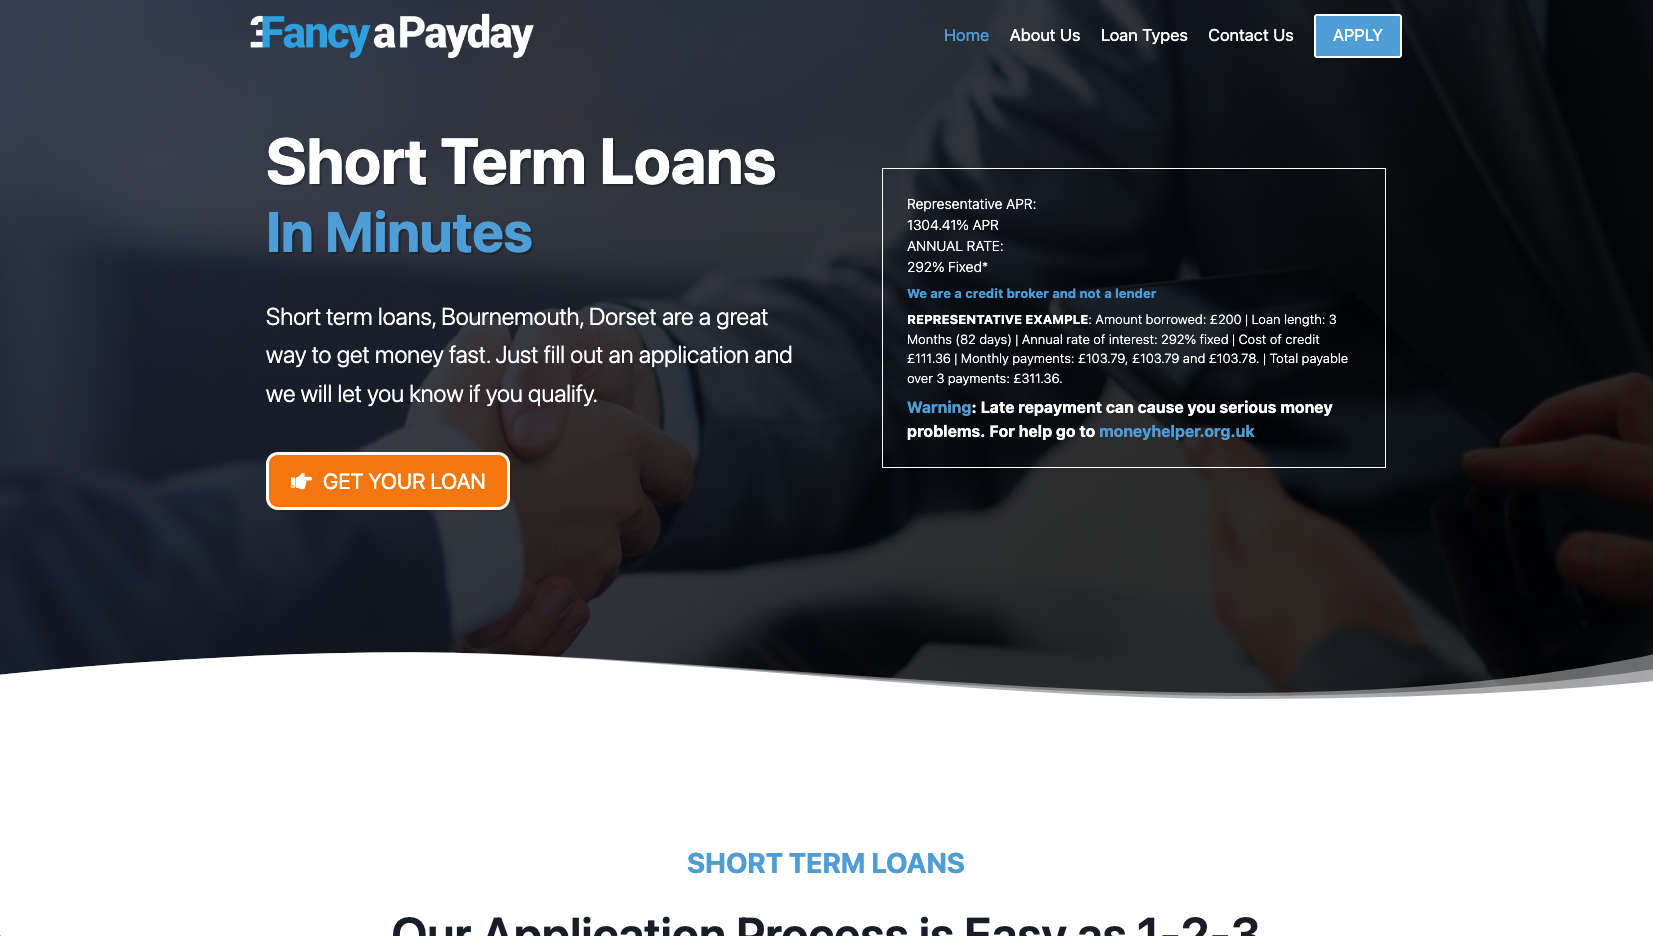 fancyapayday-uk-loans